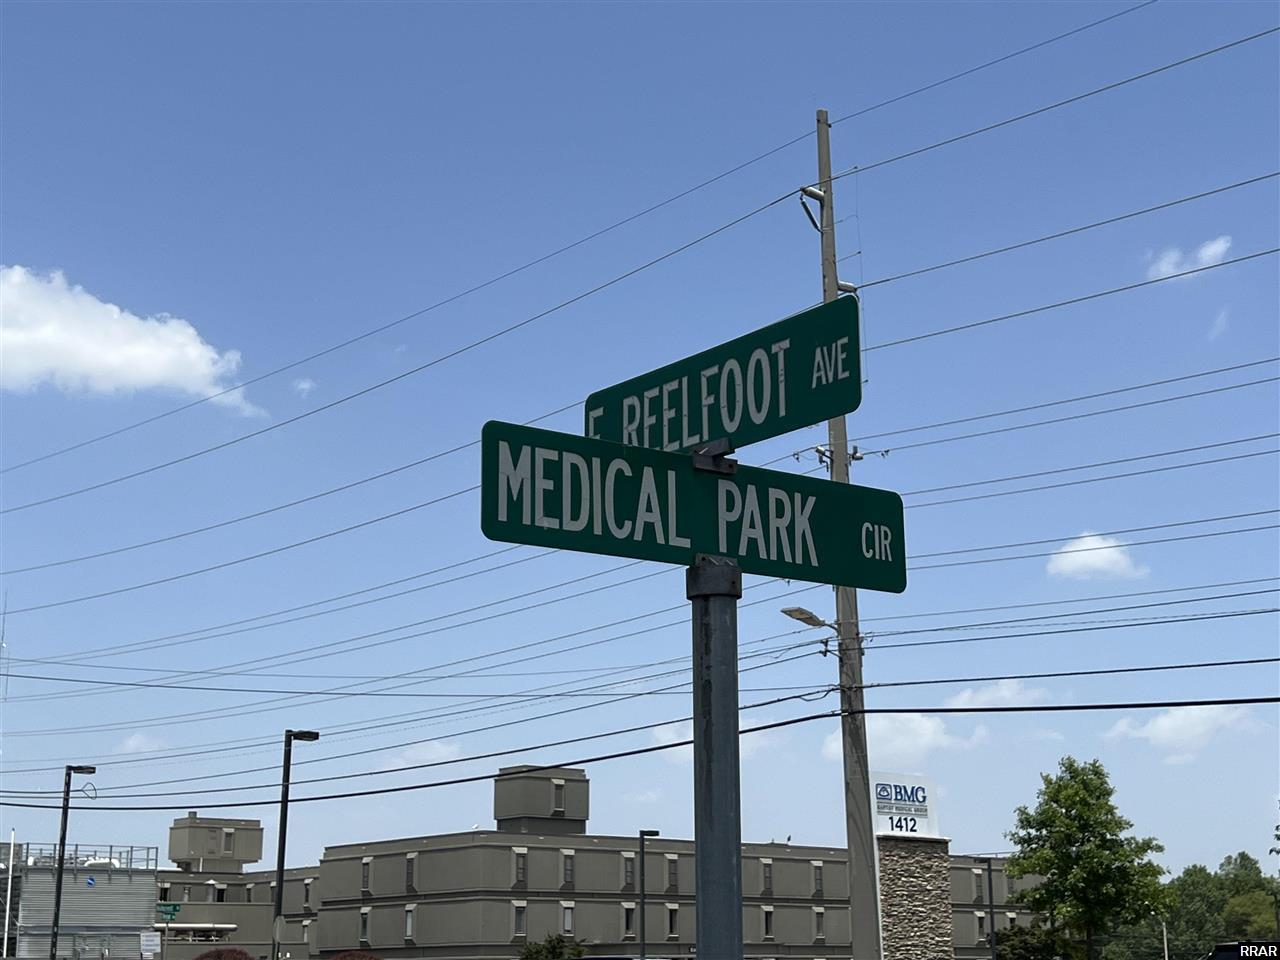 Medical Park Circle